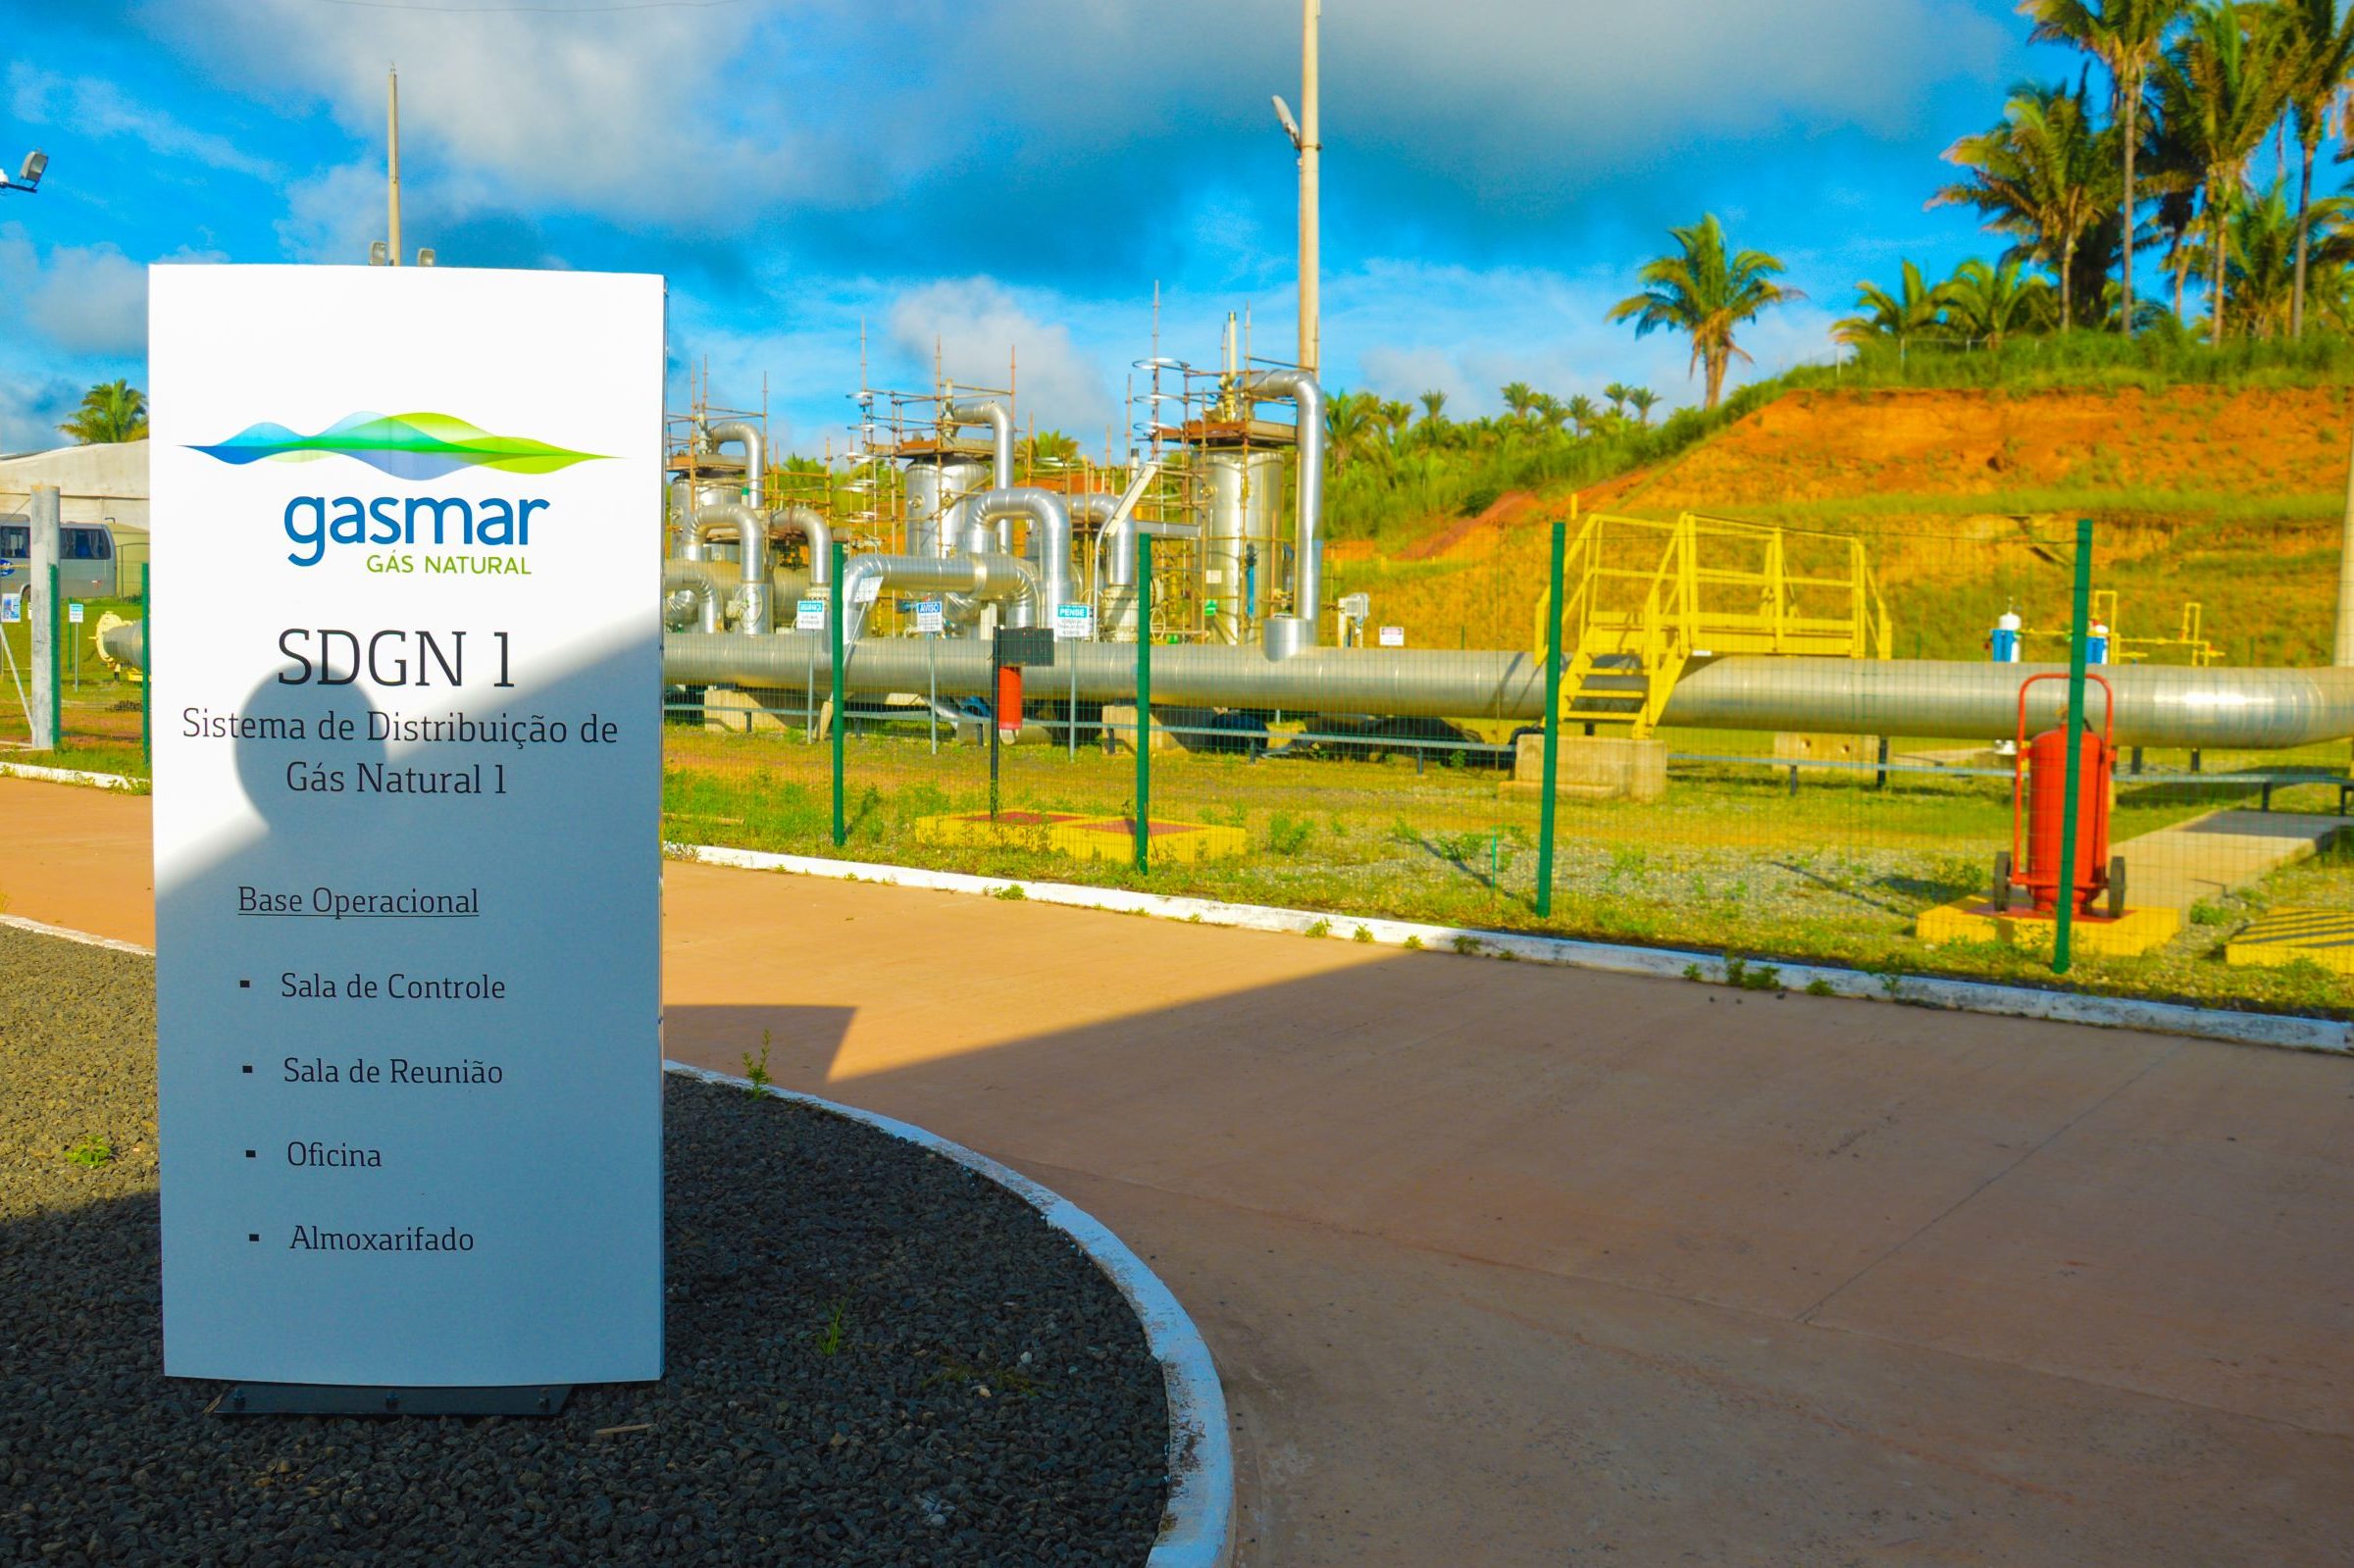 Petrobras vende ações na distribuidora de gás natural do Maranhão, Gasmar, para Termogás de Carlos Suarez. Na imagem: Instalações da Gasmar, distribuidora de gás do Maranhão (Foto: Divulgação)